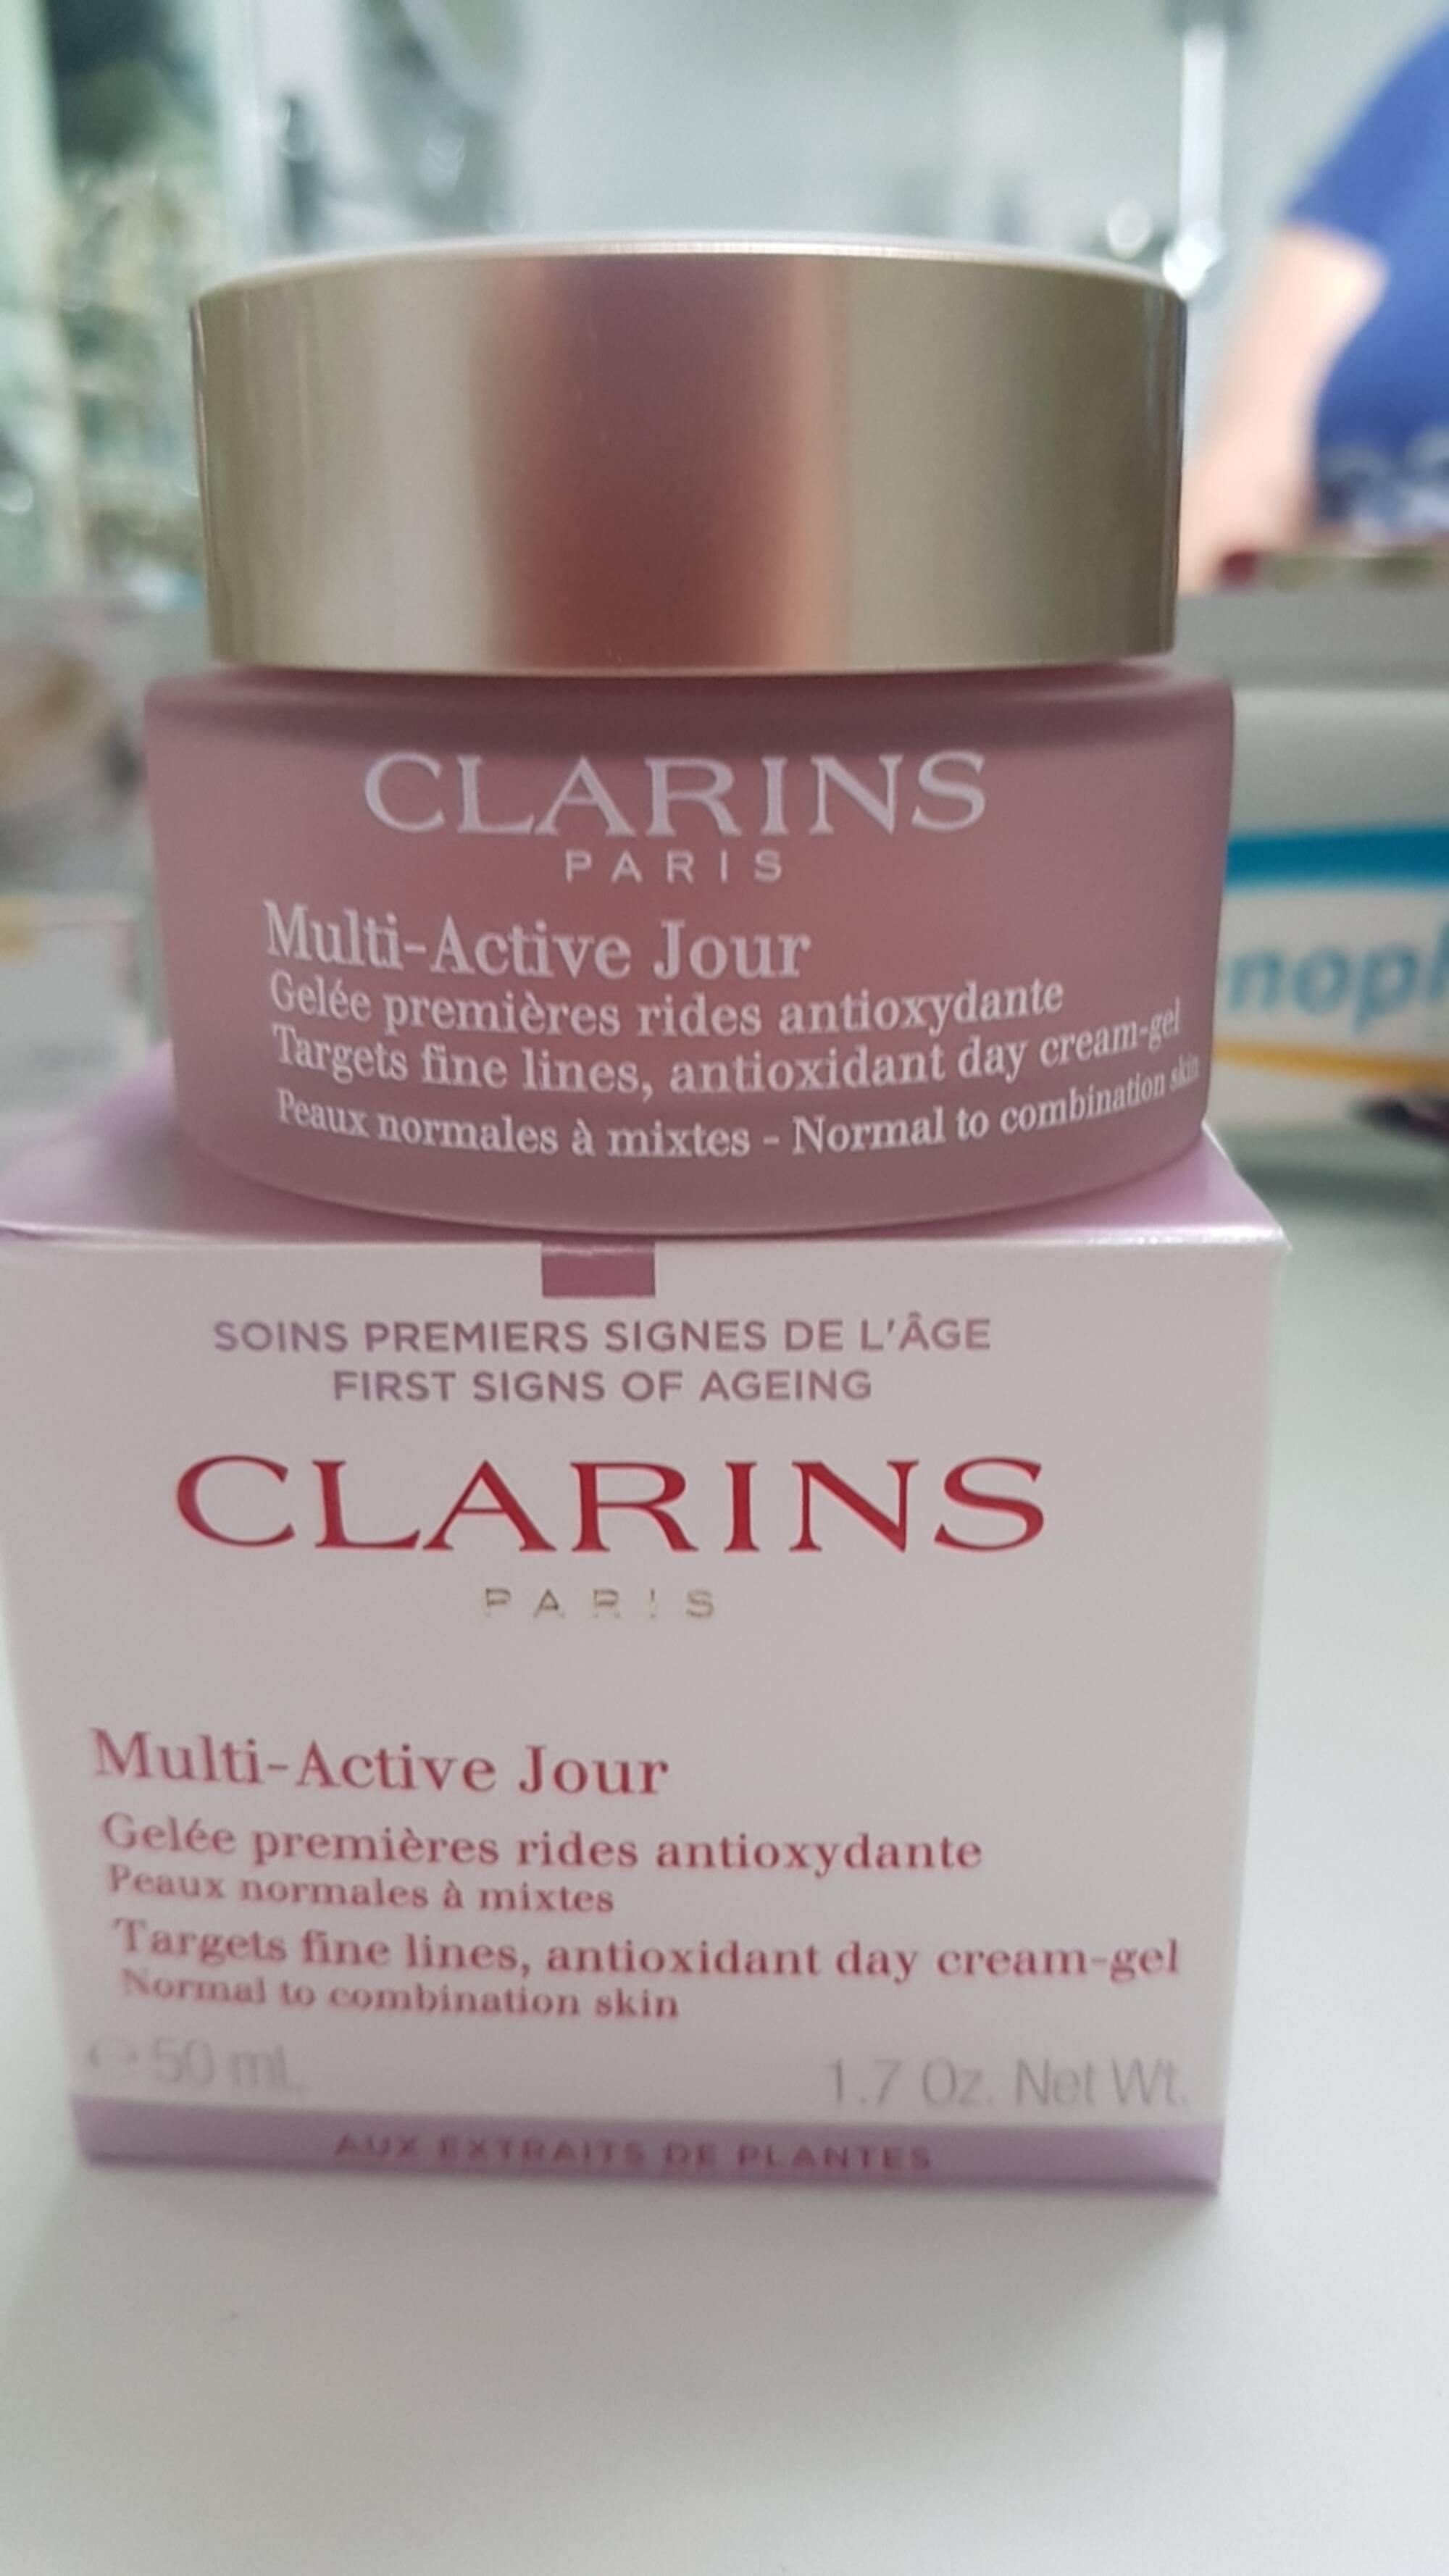 CLARINS - Multi-active jour - Gelée premières rides antioxydante